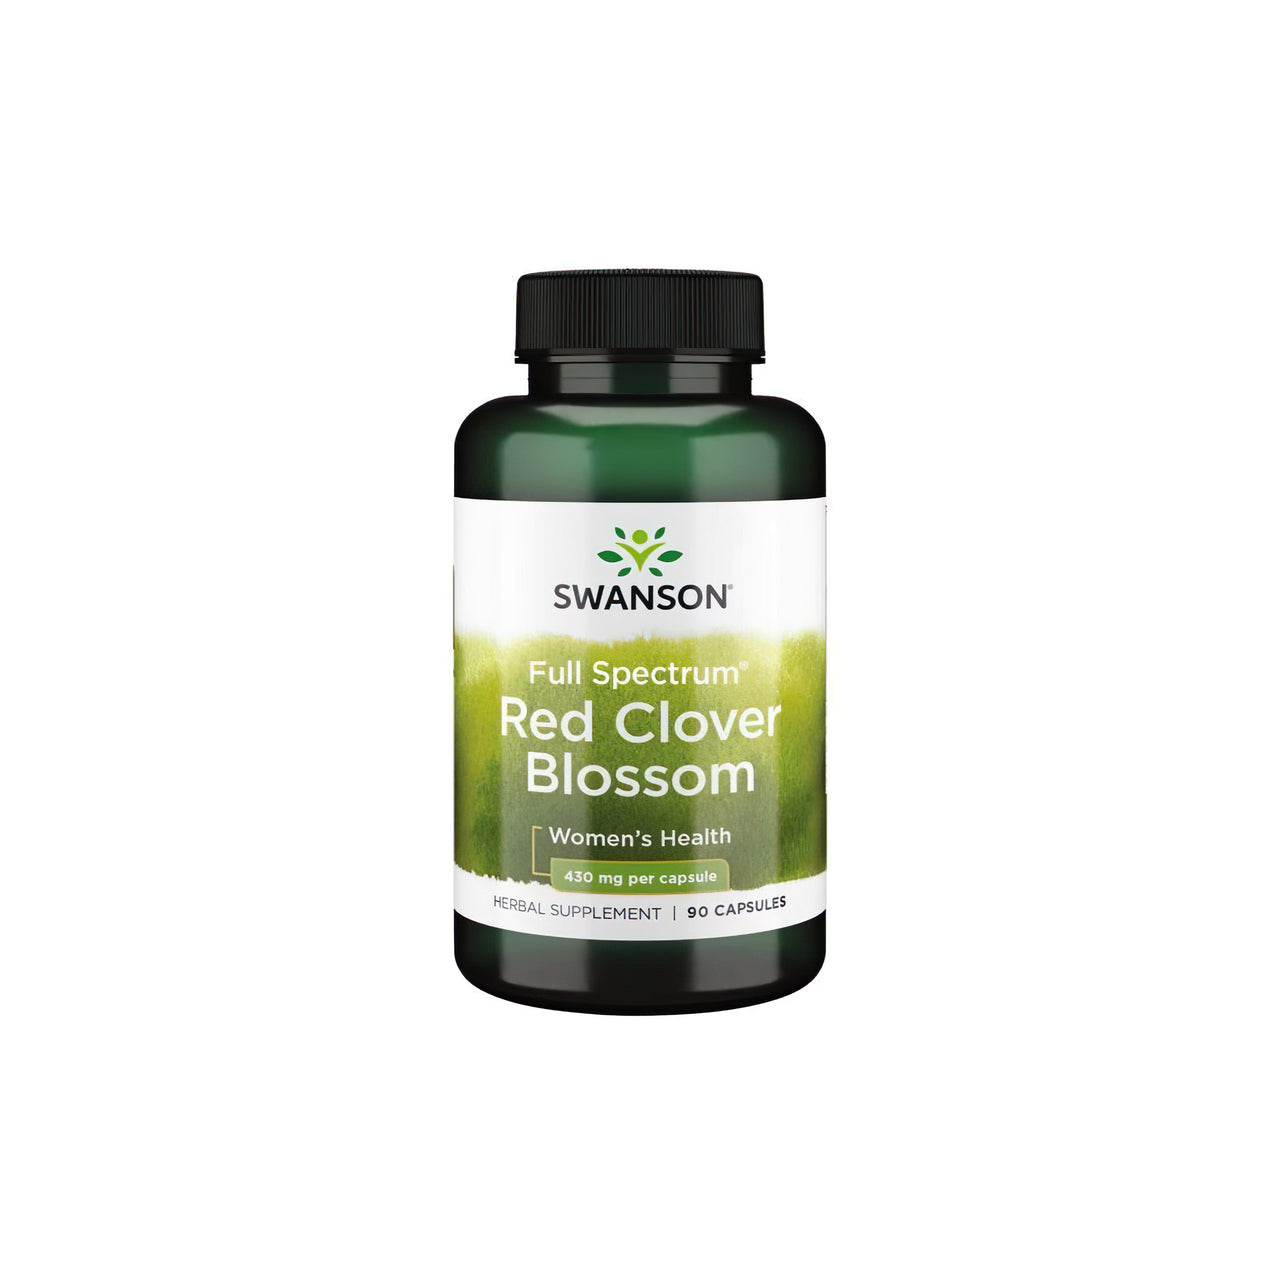 Swanson Red Clover Blossom 430 mg 90 caps é um remédio natural que pode proporcionar alívio durante a menopausa ou o ciclo menstrual.